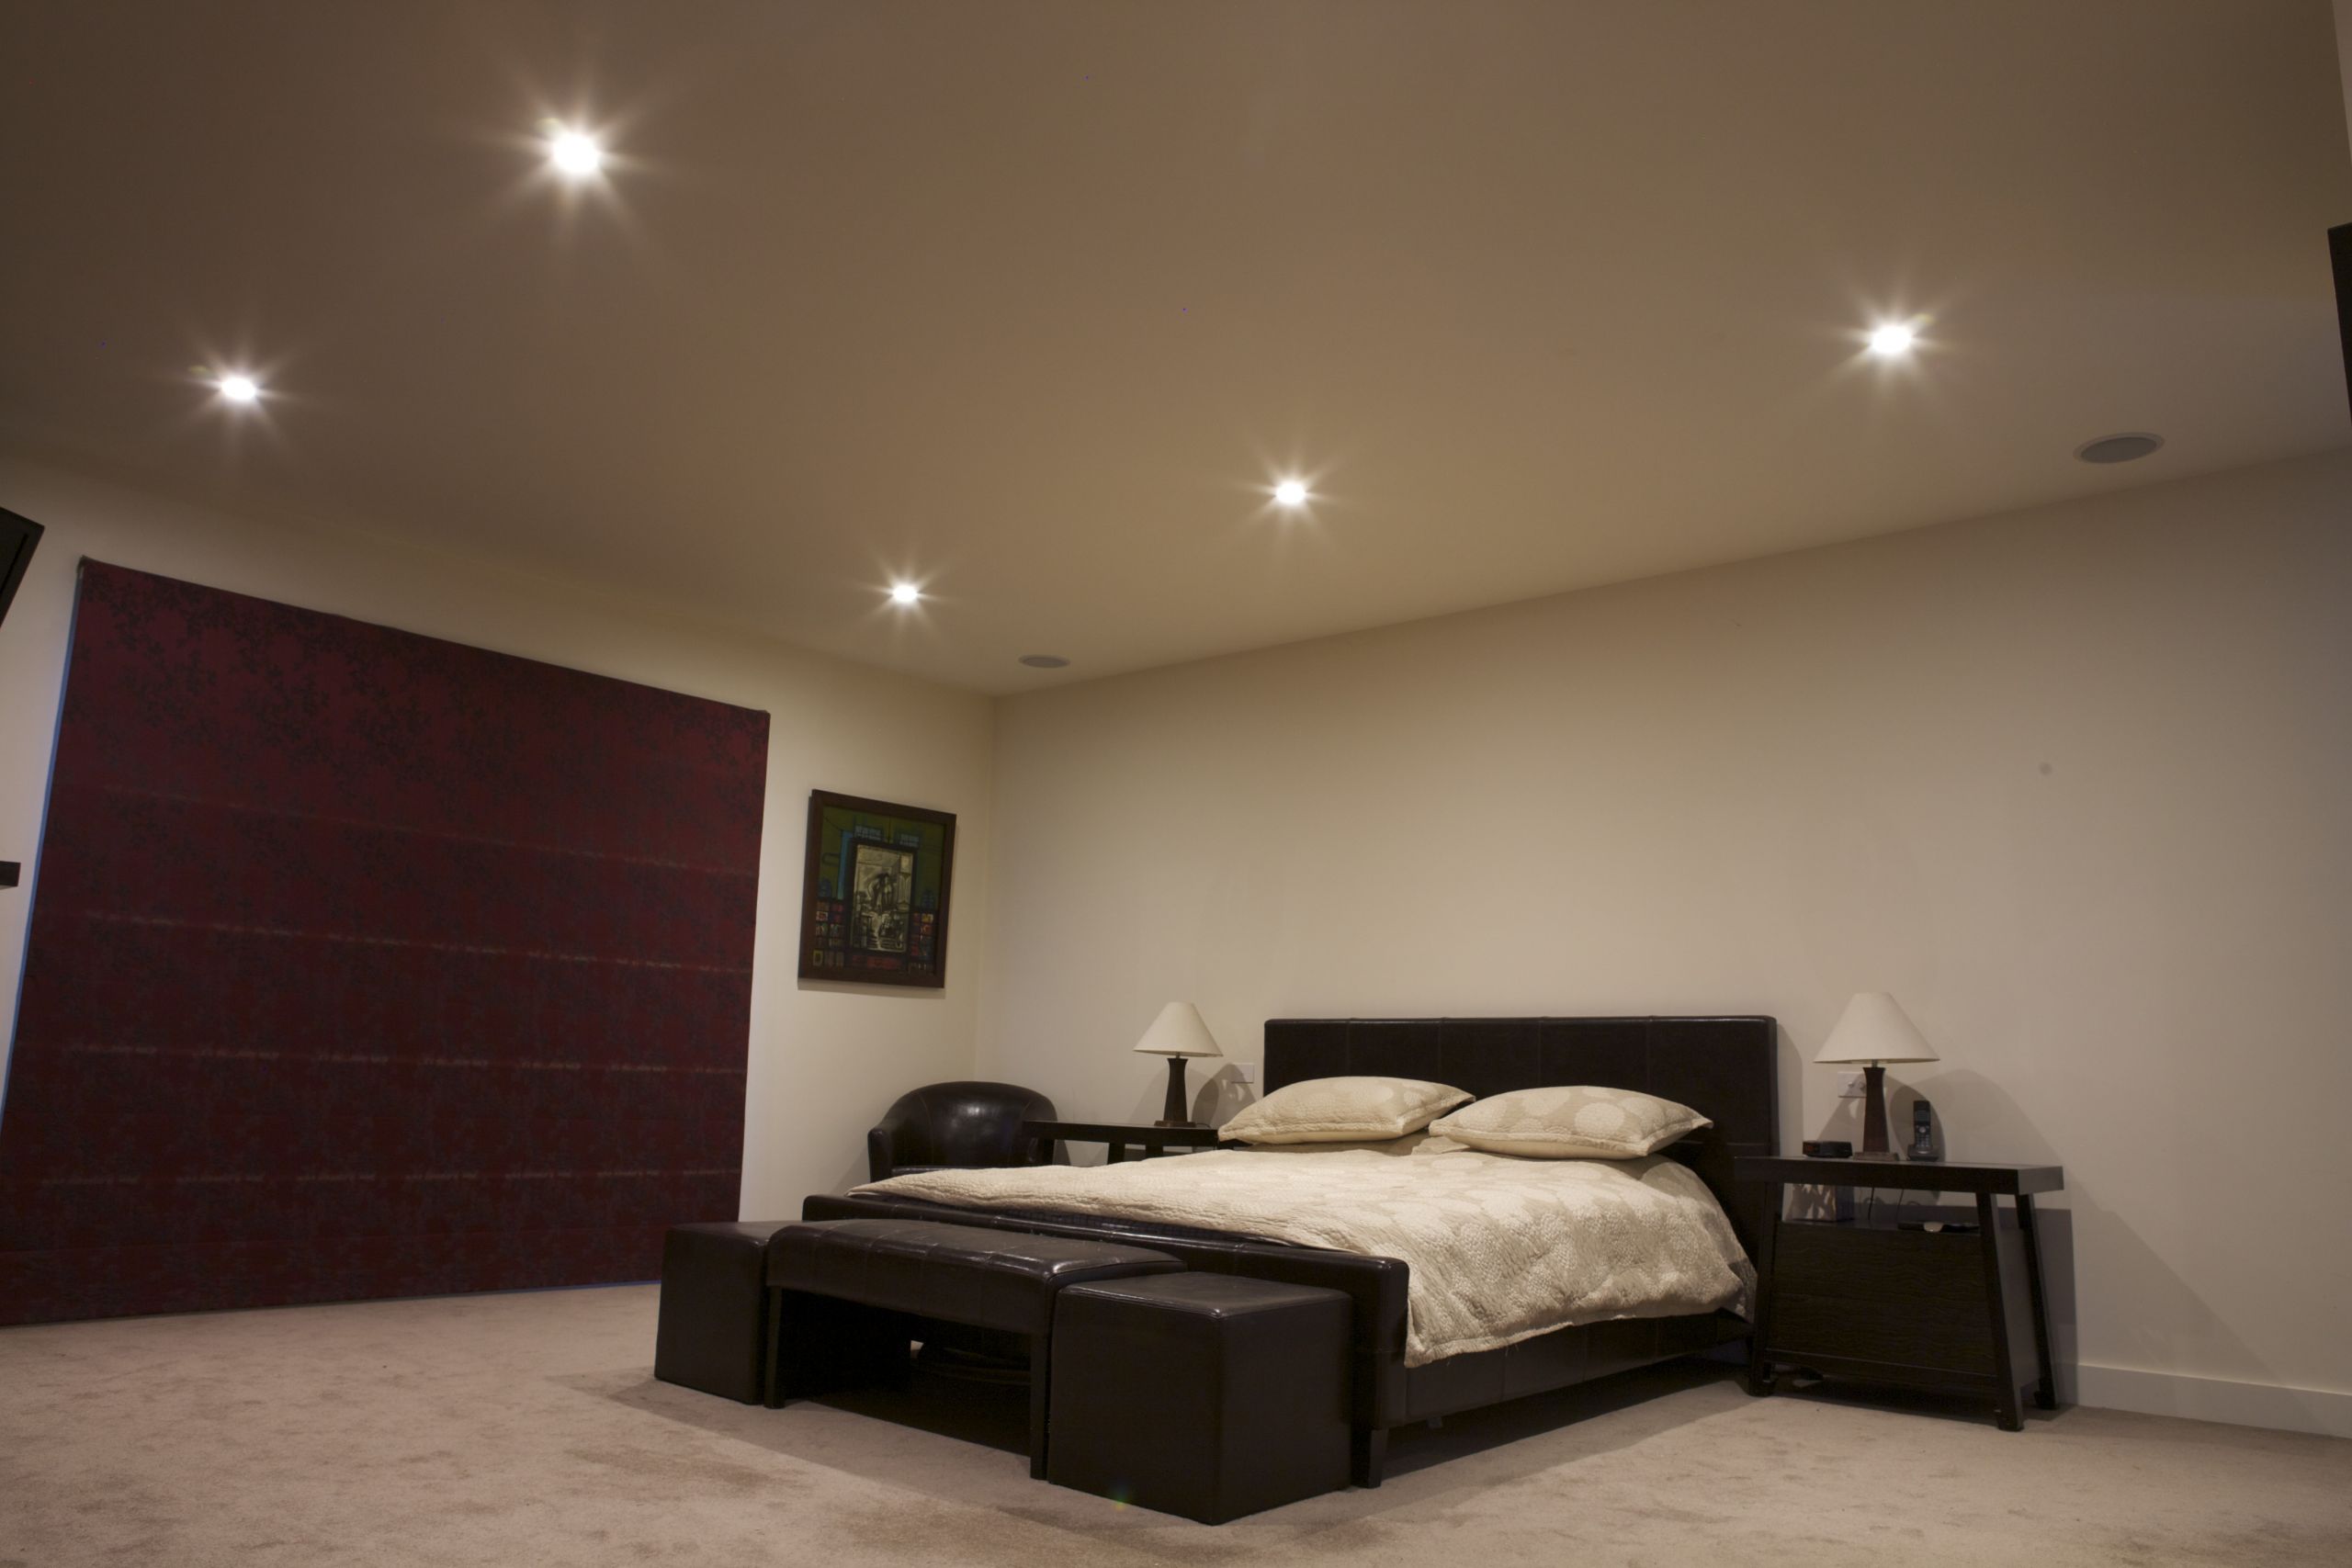 Led Lights For Bedroom
 70mm or 90mm Downlights Choosing LED lights